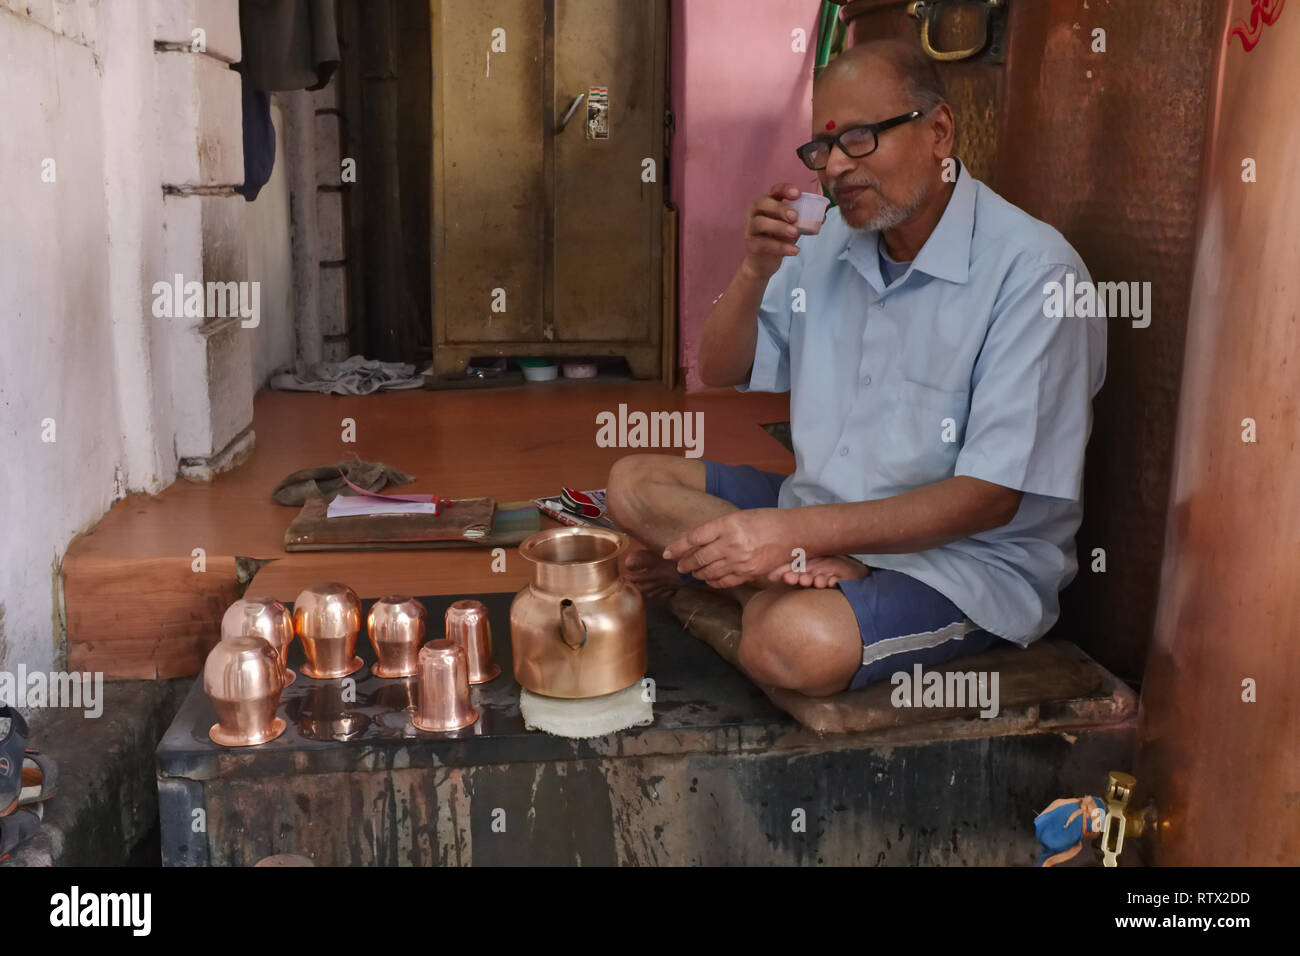 Un uomo libero di erogazione di acqua potabile da un pozzo in Javeri area Bazar, Mumbai, India, avente un tea break con un cosiddetto "taglio" (mezza tazza di tè) Foto Stock